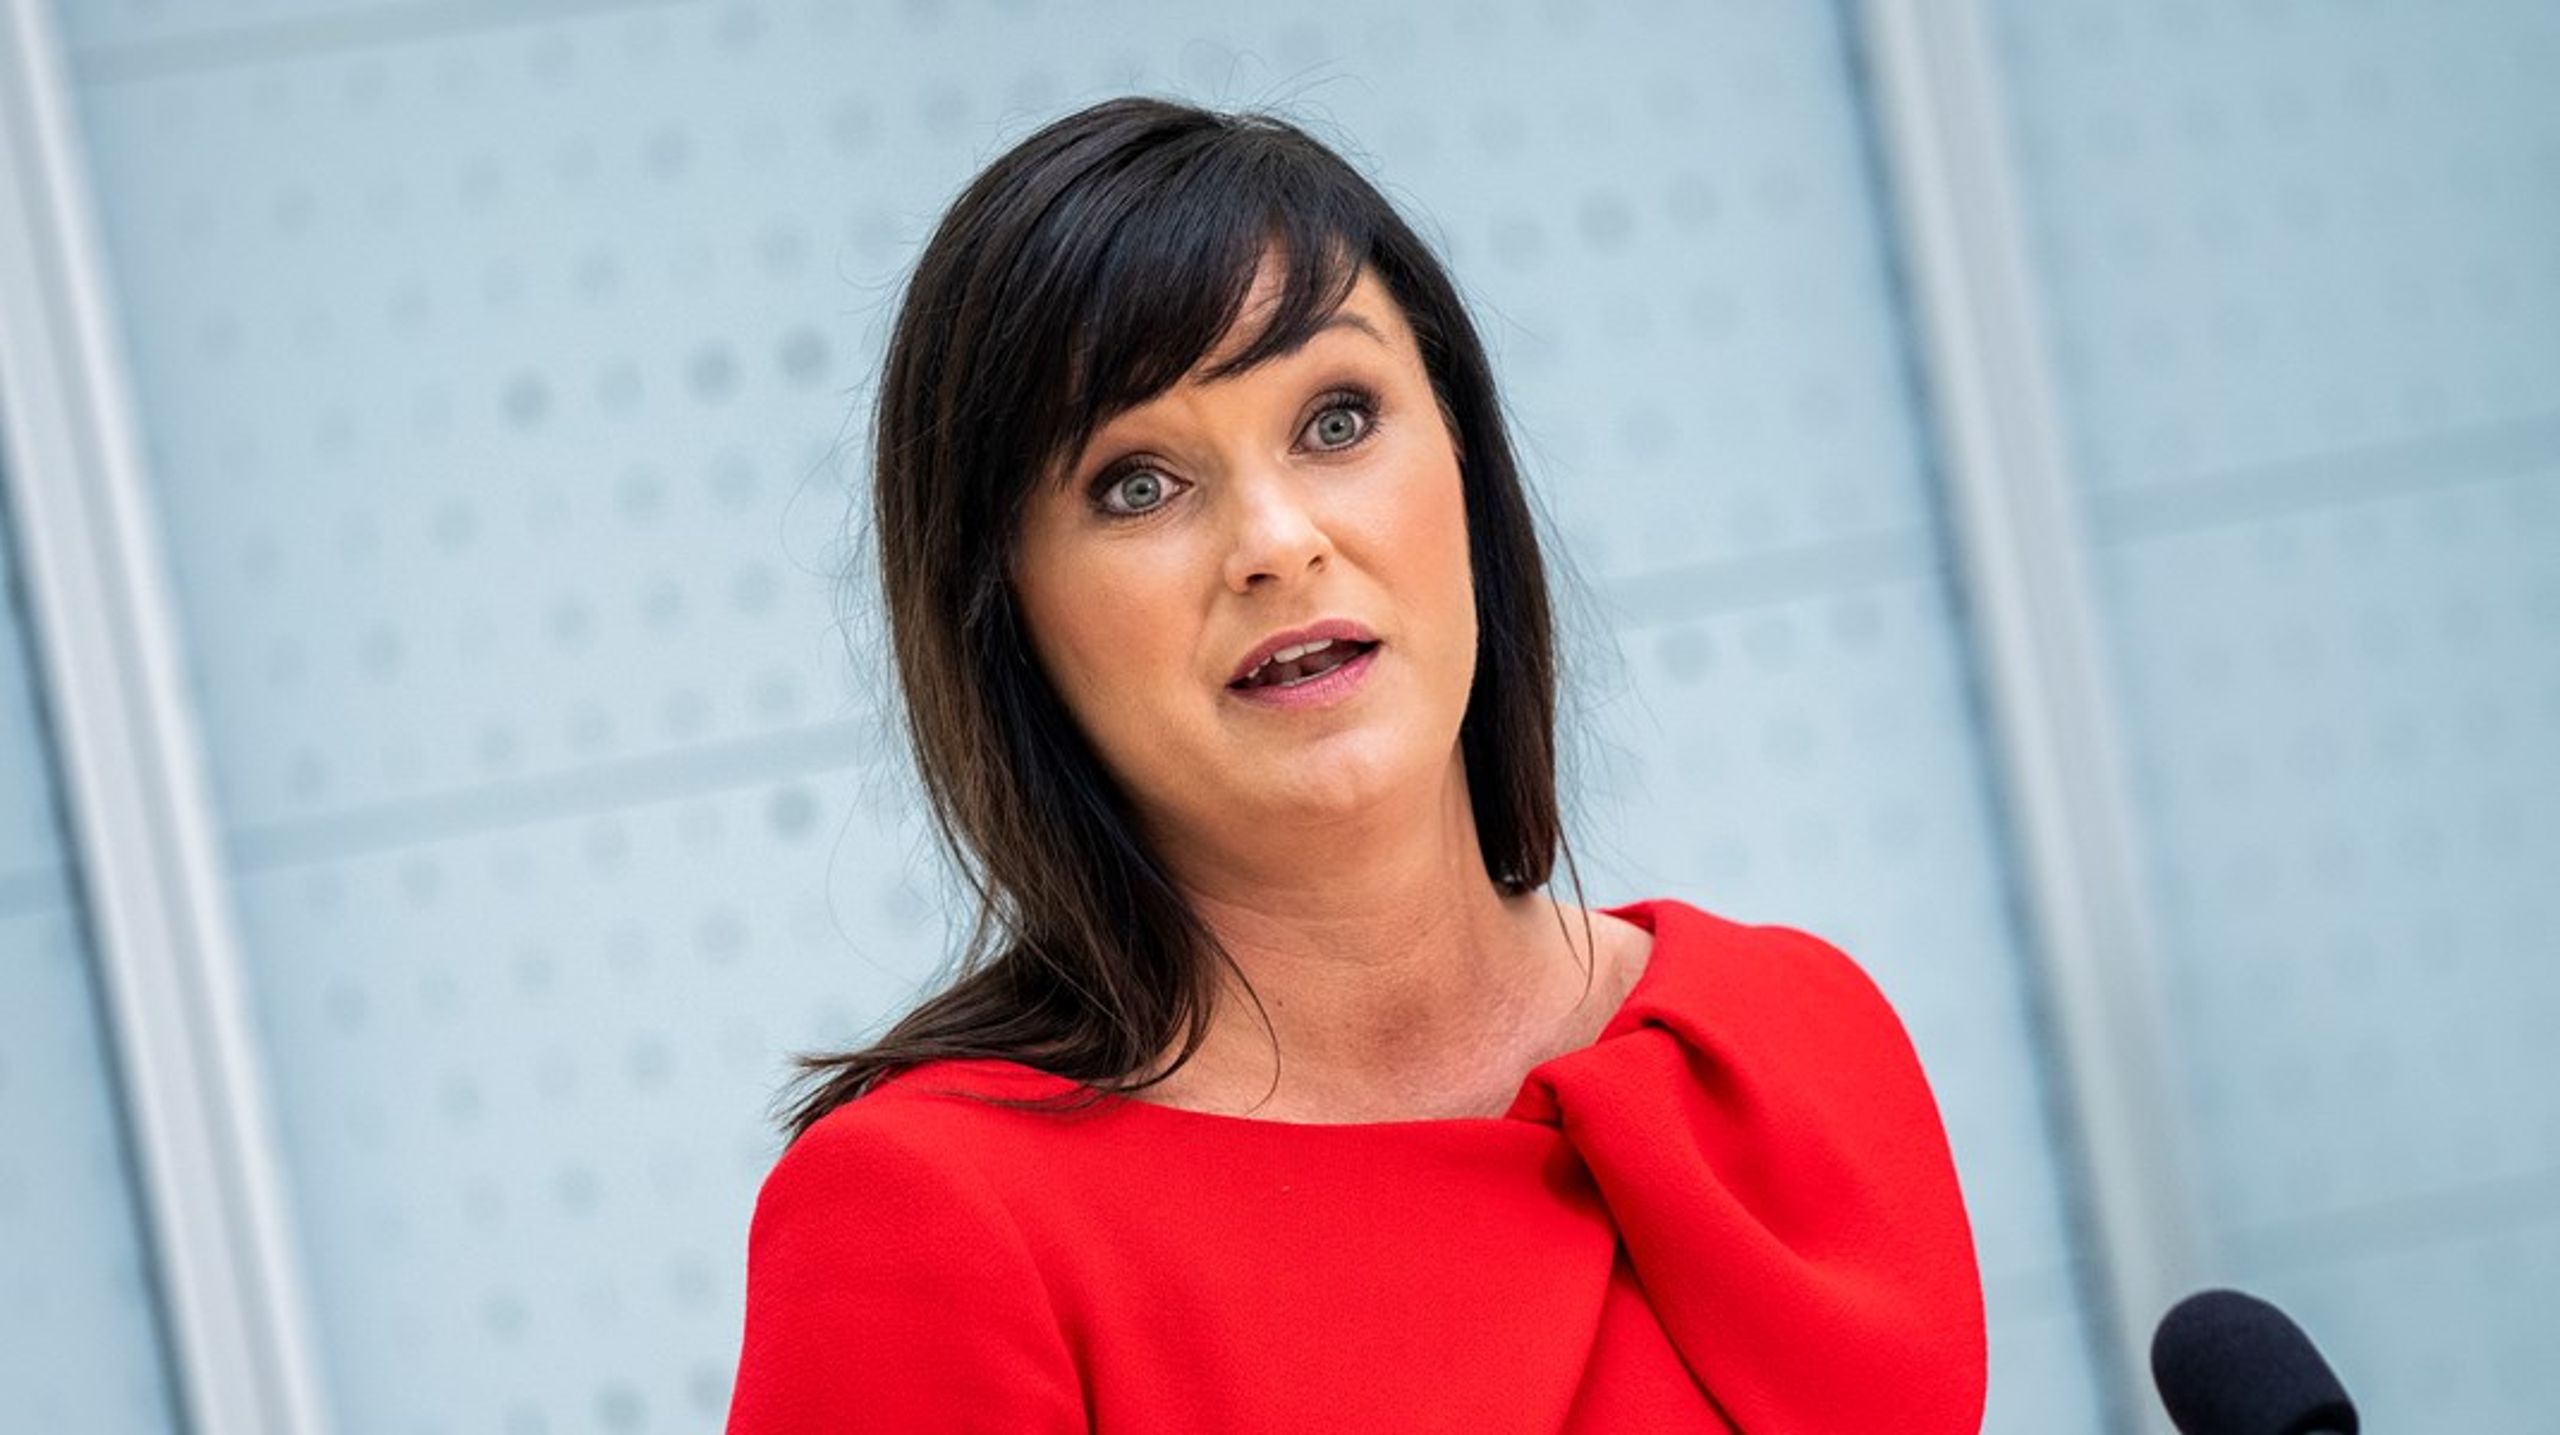 Sundhedsminister Sophie Løhde har orienteret Folketinget om, at praksissen for juridisk kønsskifte blandt unge transpersoner ændres i Danmark.